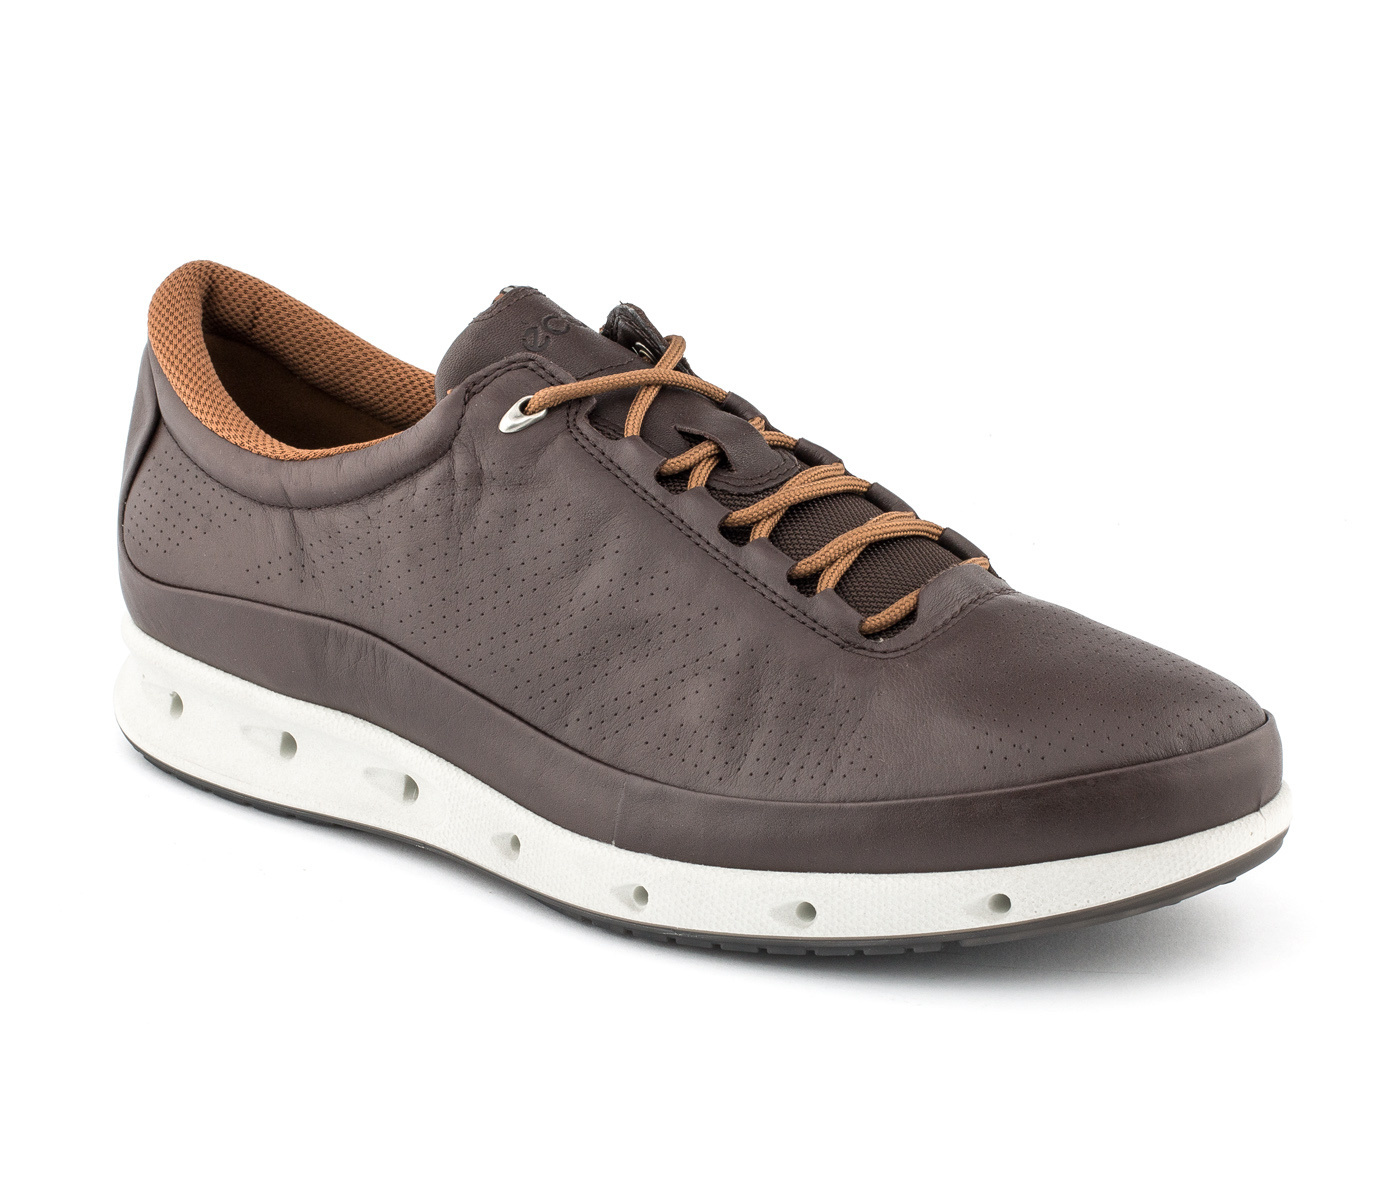 ECCO Cool 831304 Premium Leather Upper Orthotic Comfort Gortex Sneaker ...